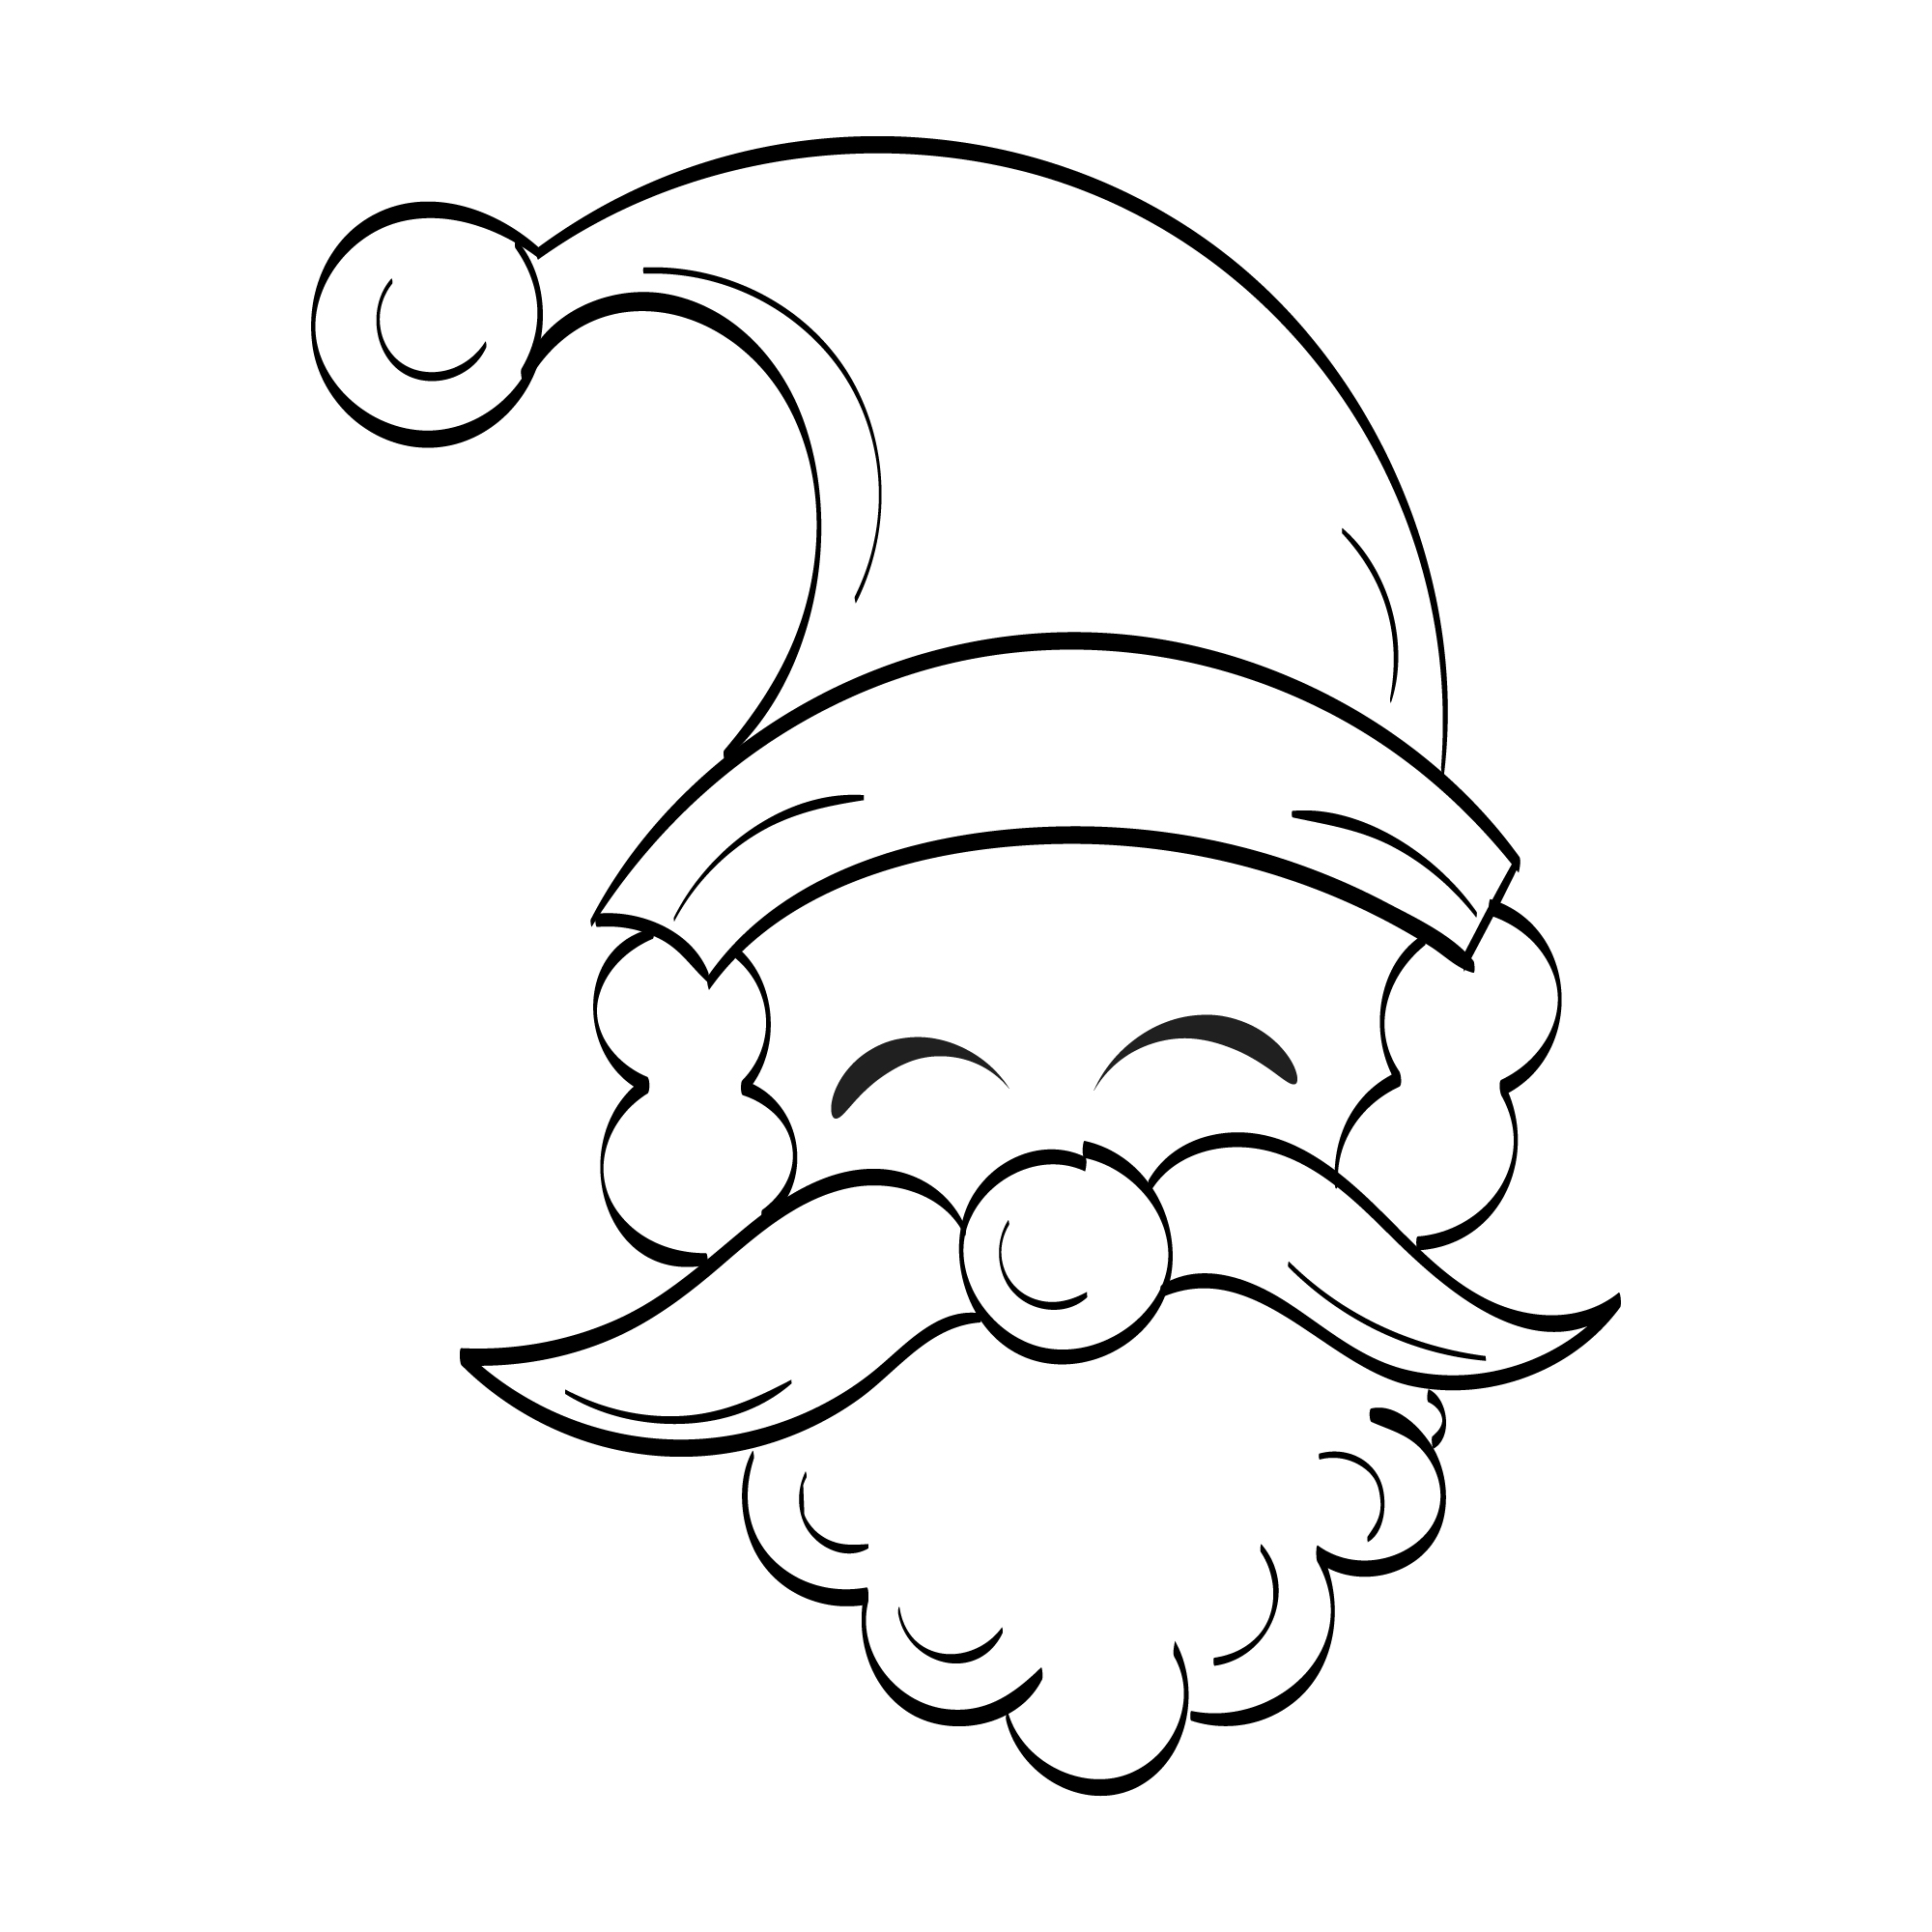 Unique hand drawn picture of Santa.